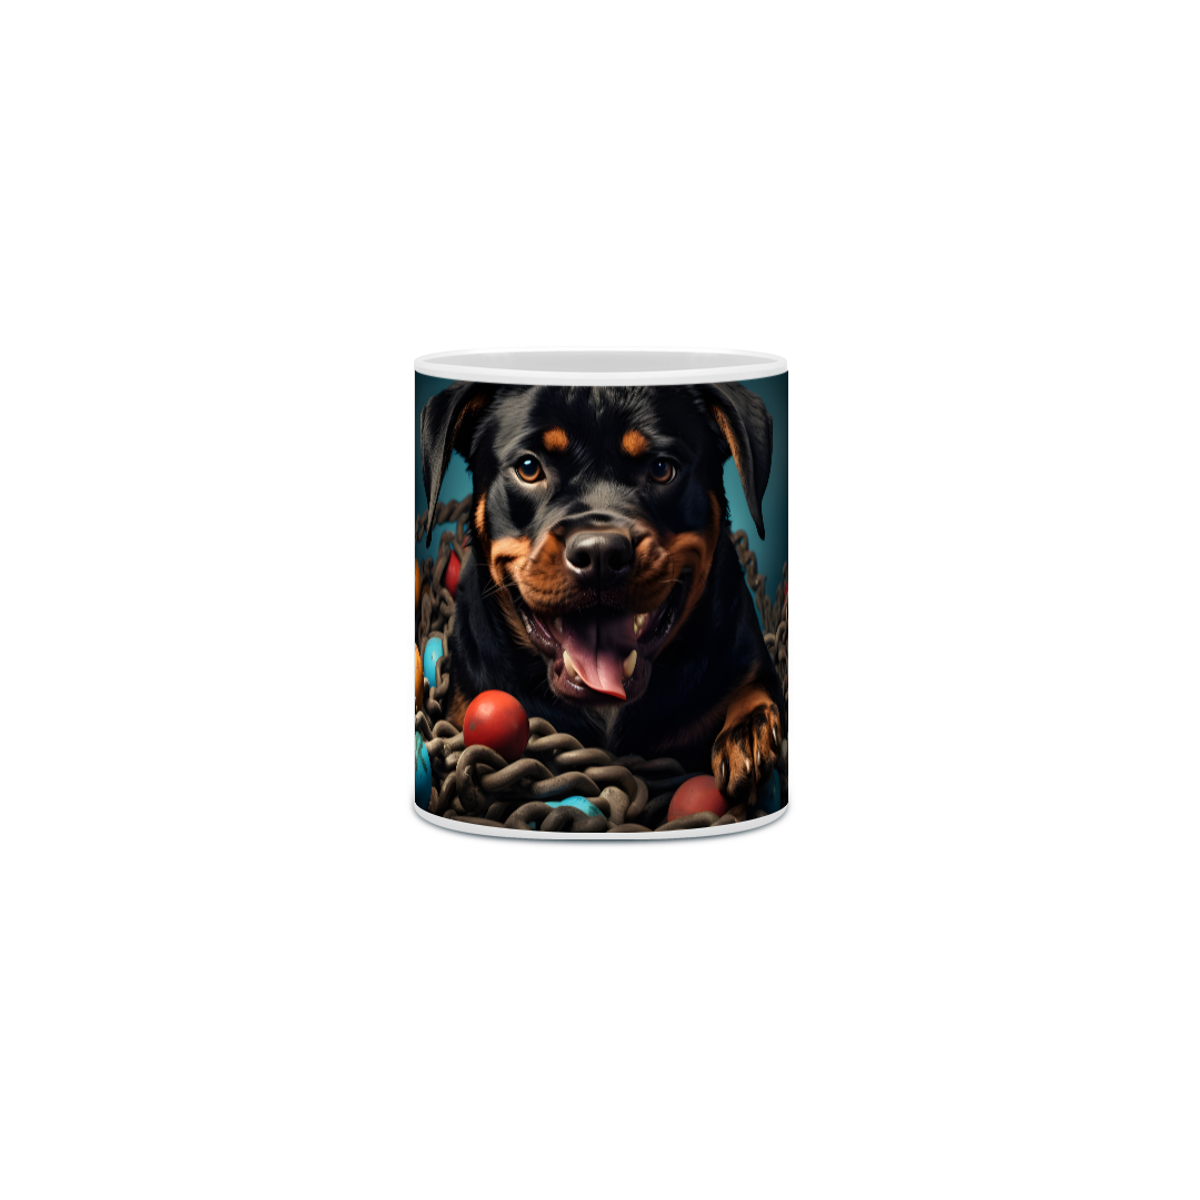 Nome do produto: Caneca Rottweiler com Arte Digital - #Autenticidade 0003